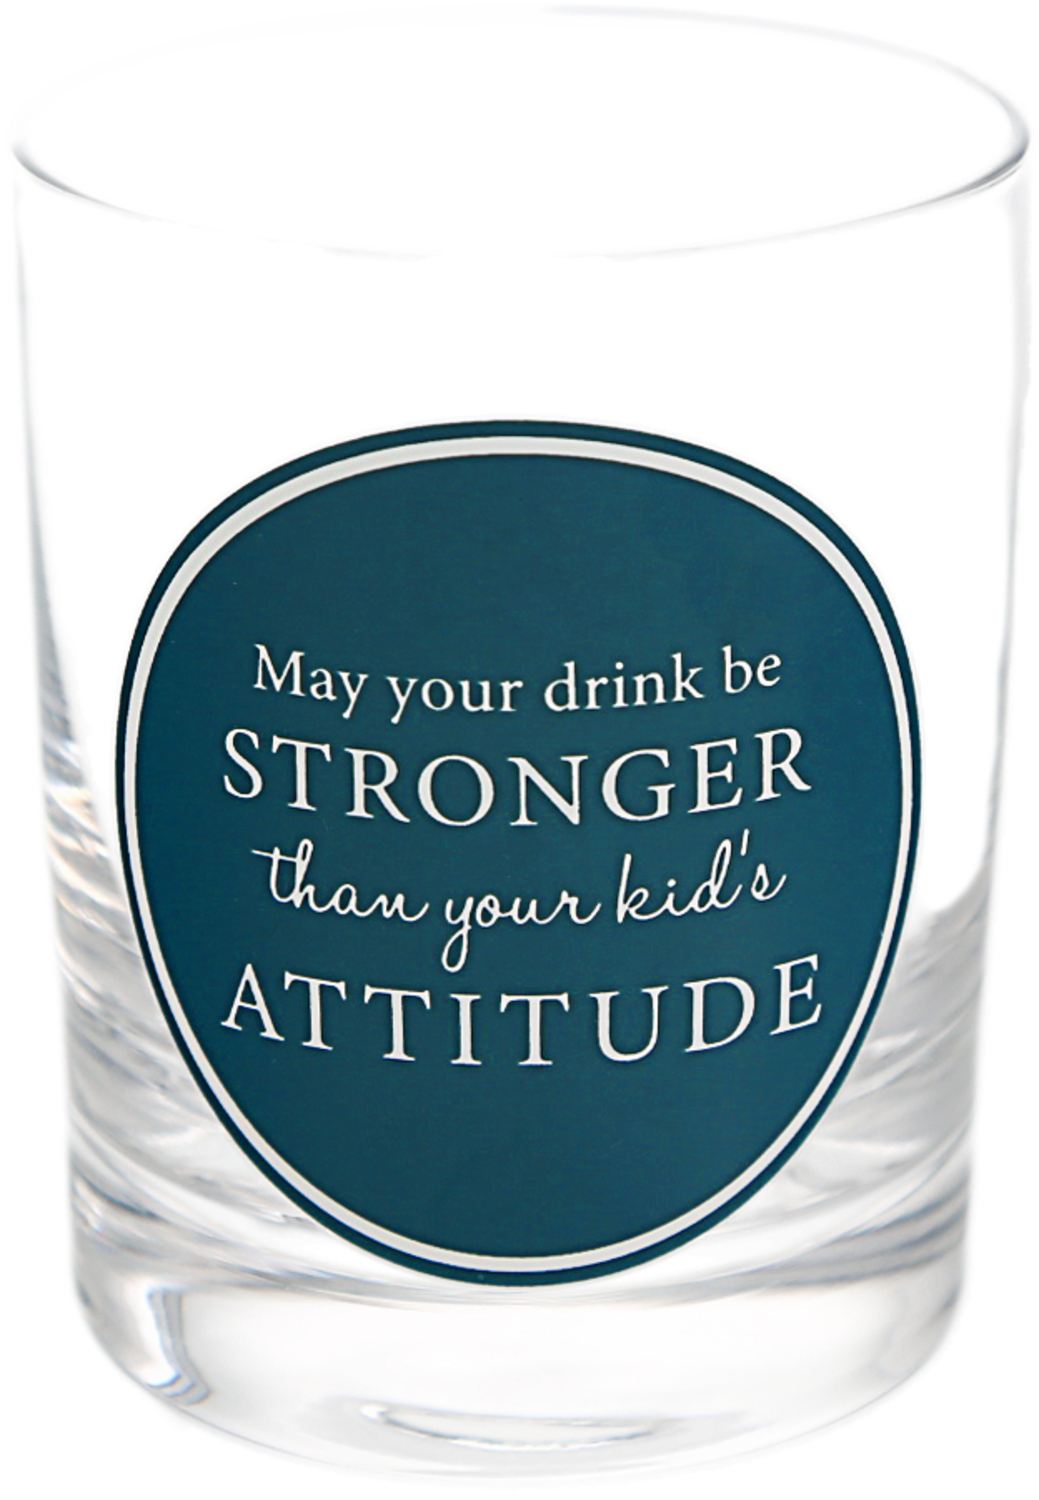 Attitude by A-Parent-ly - Attitude - 13 oz Rocks Glass